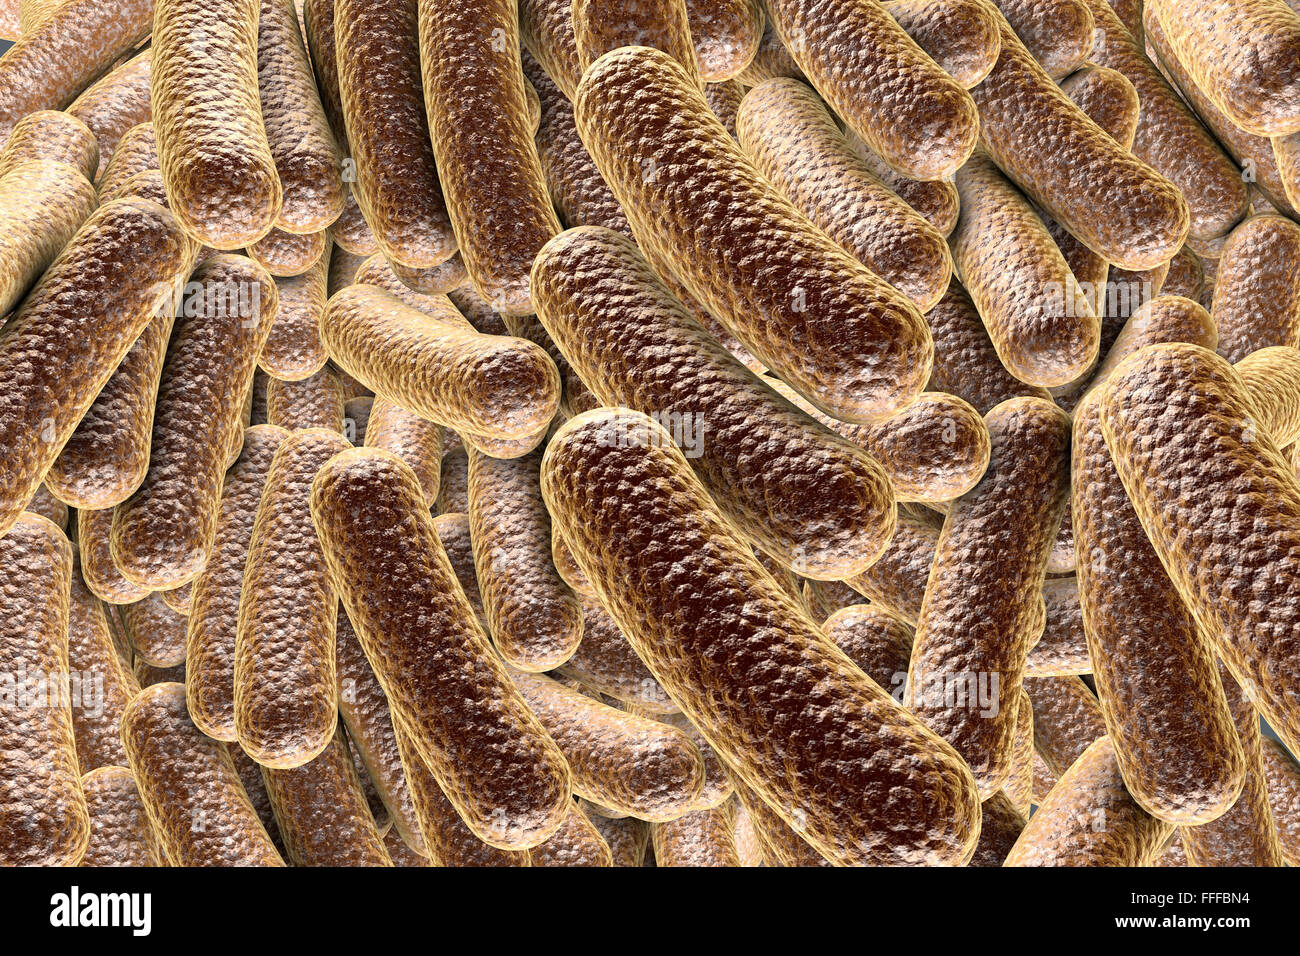 Illustration of rod-shaped bacteria. Rod-shaped bacteria include Escherichia coli, Salmonella, Shigella, Legionella, Stock Photo